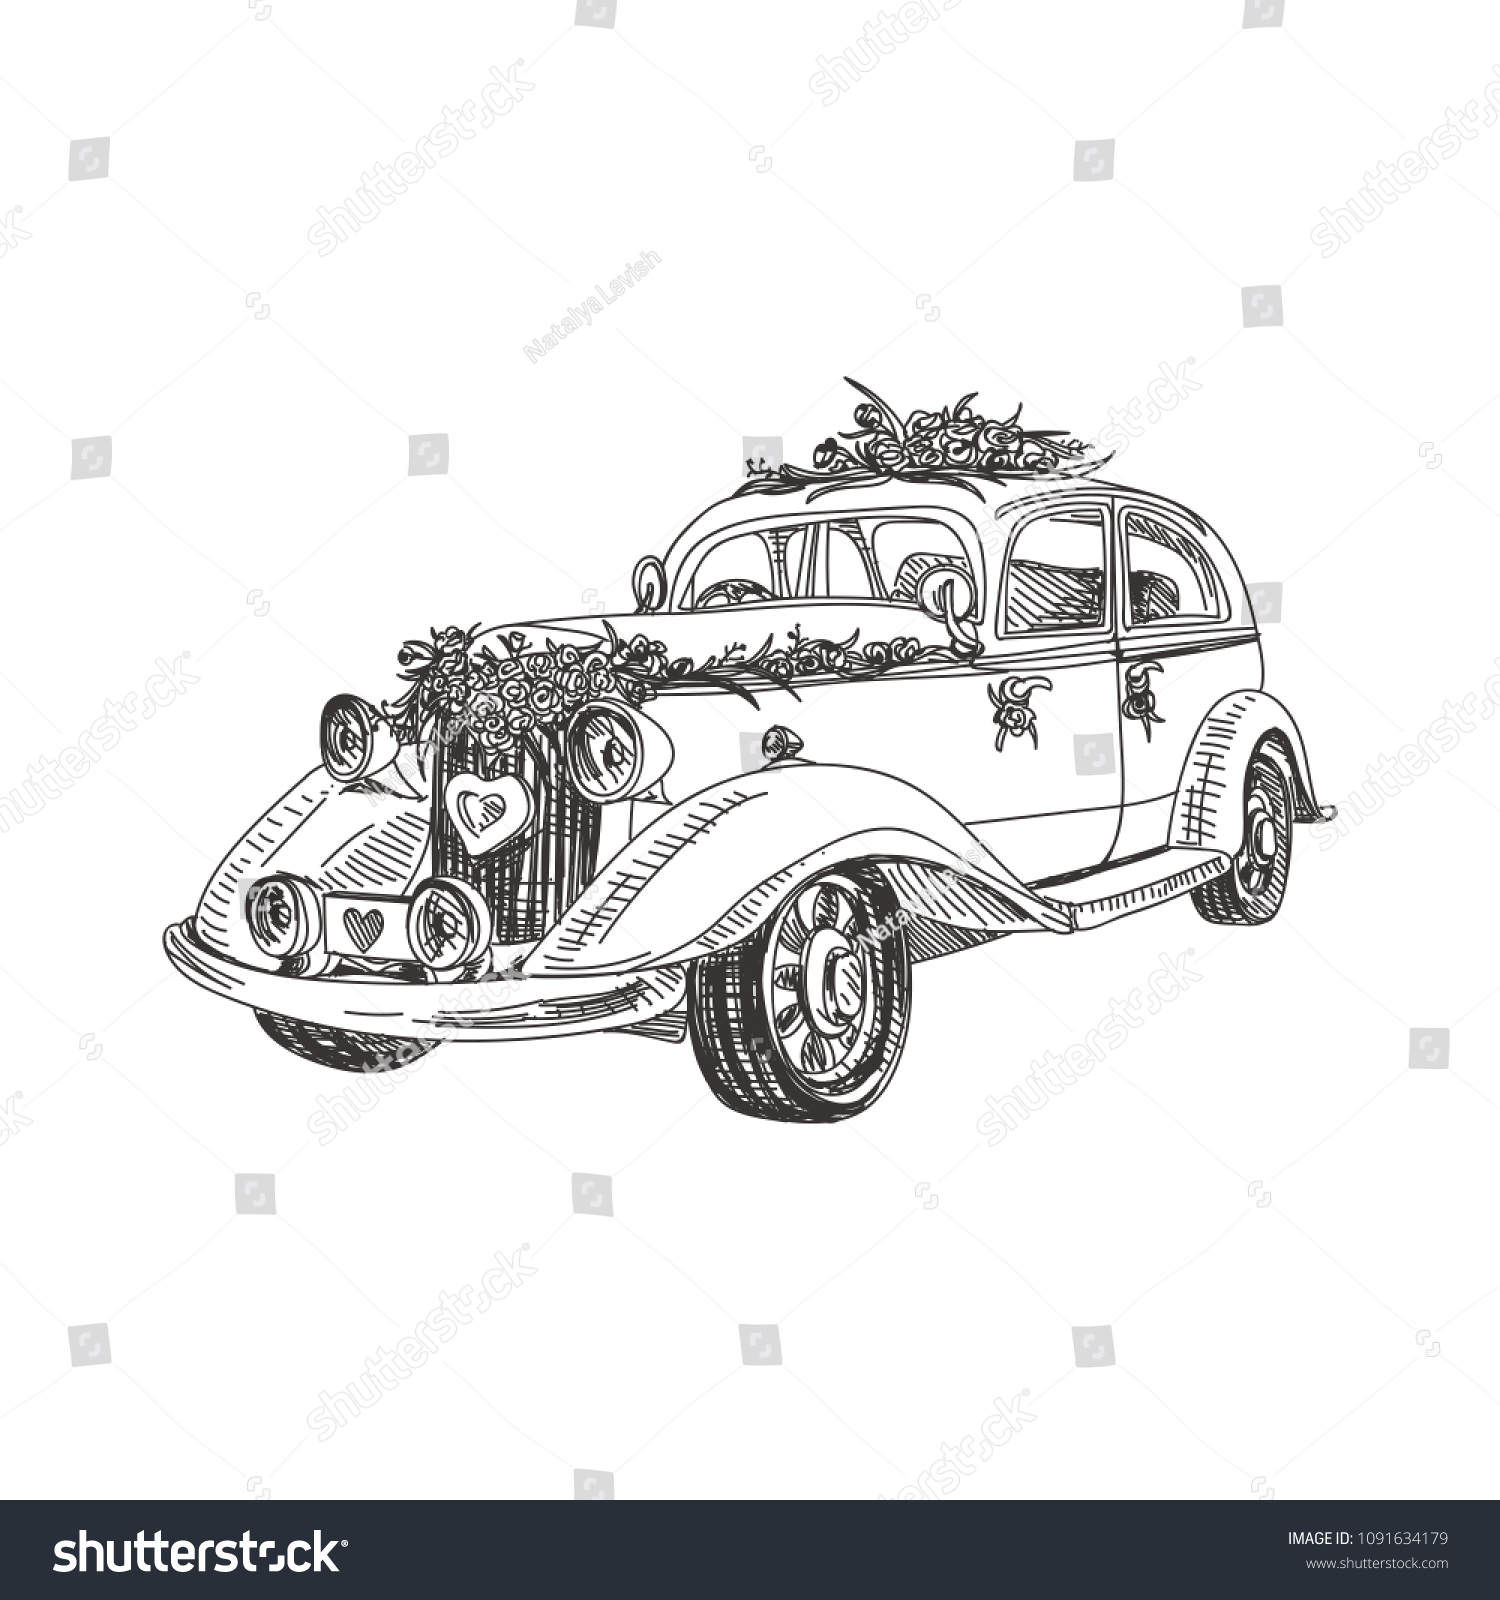 美しいベクター手描きのレトロな結婚式の車イラスト レトロなスタイルの詳細画像 ラベル パッケージ カードデザイン用のビンテージスケッチエレメント 現代の背景 のベクター画像素材 ロイヤリティフリー Shutterstock